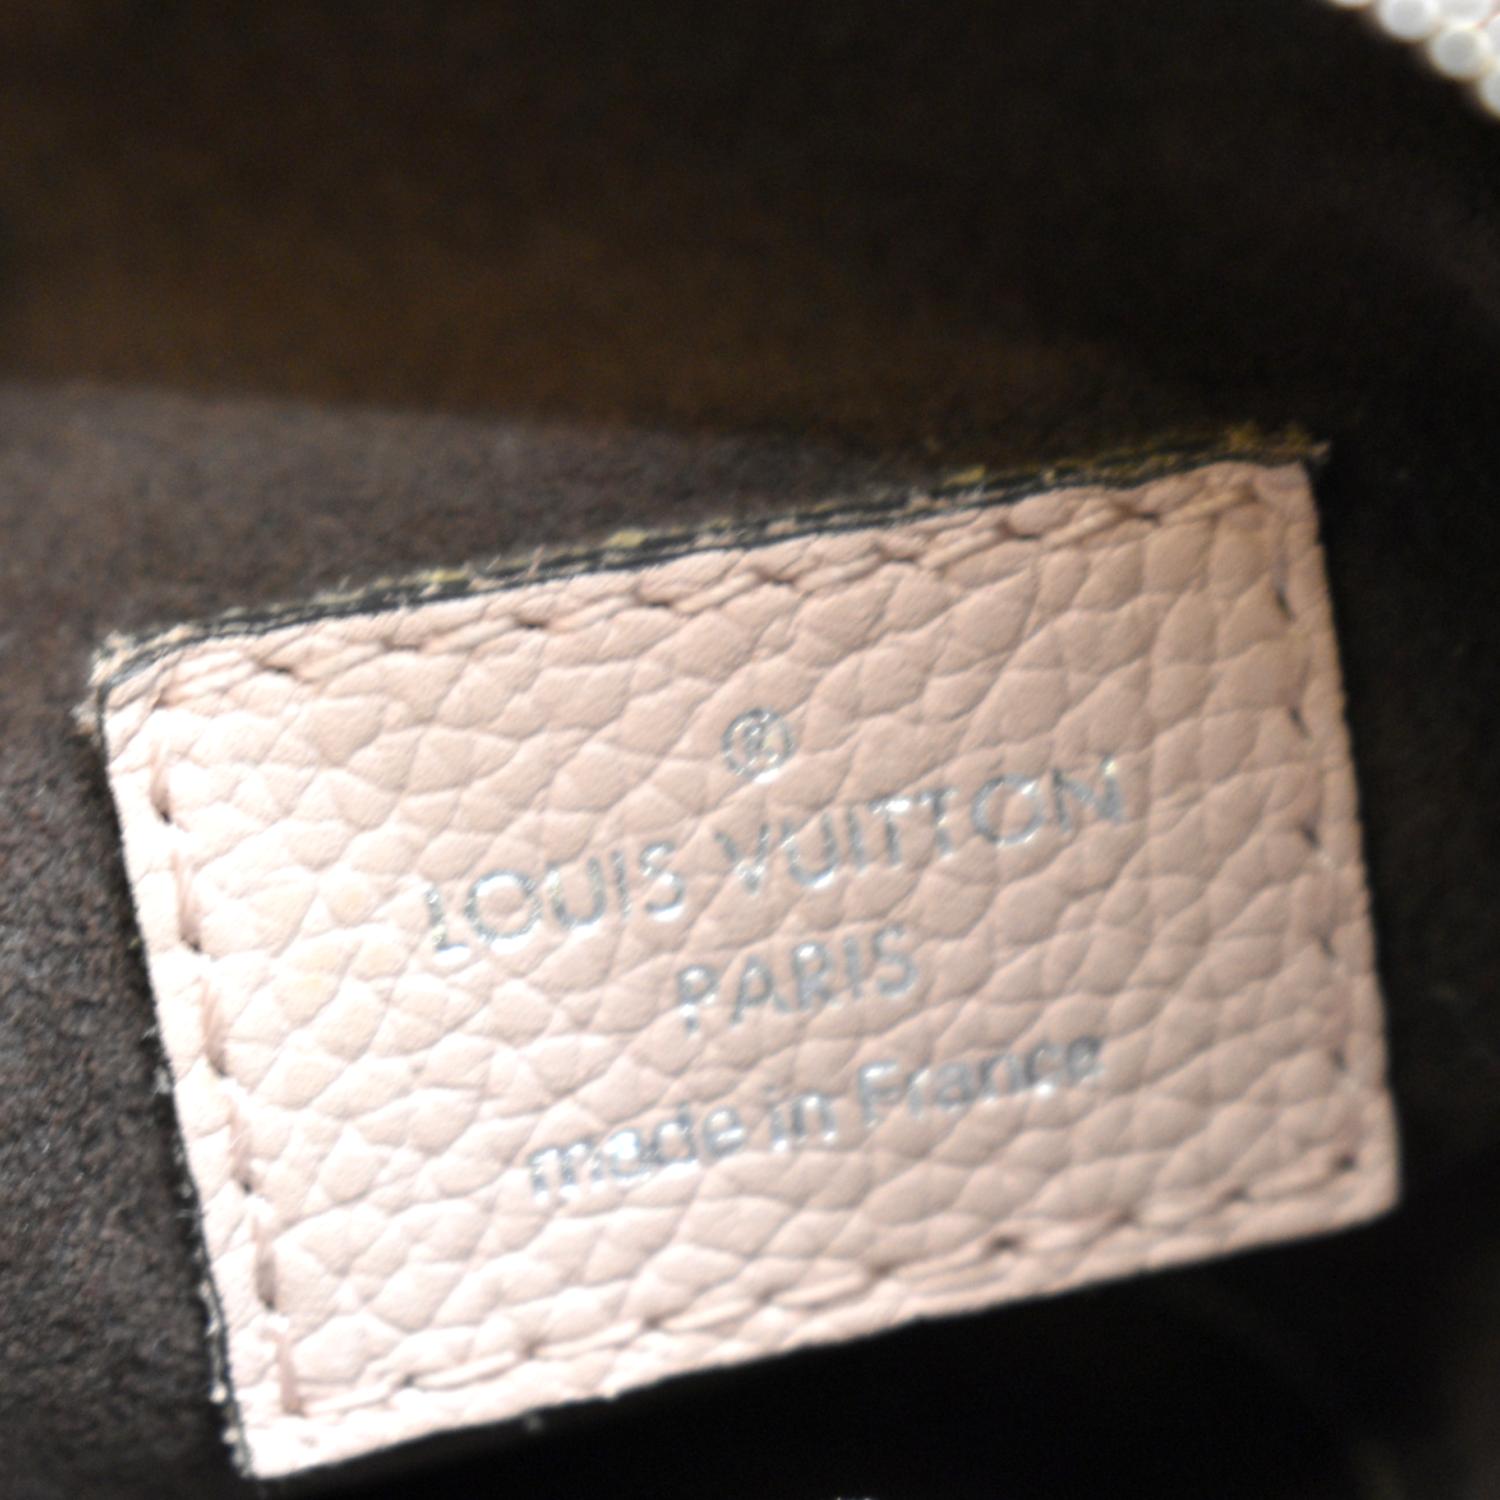 Louis Vuitton Pink Babylone PM Mahina bag – Bagaholic